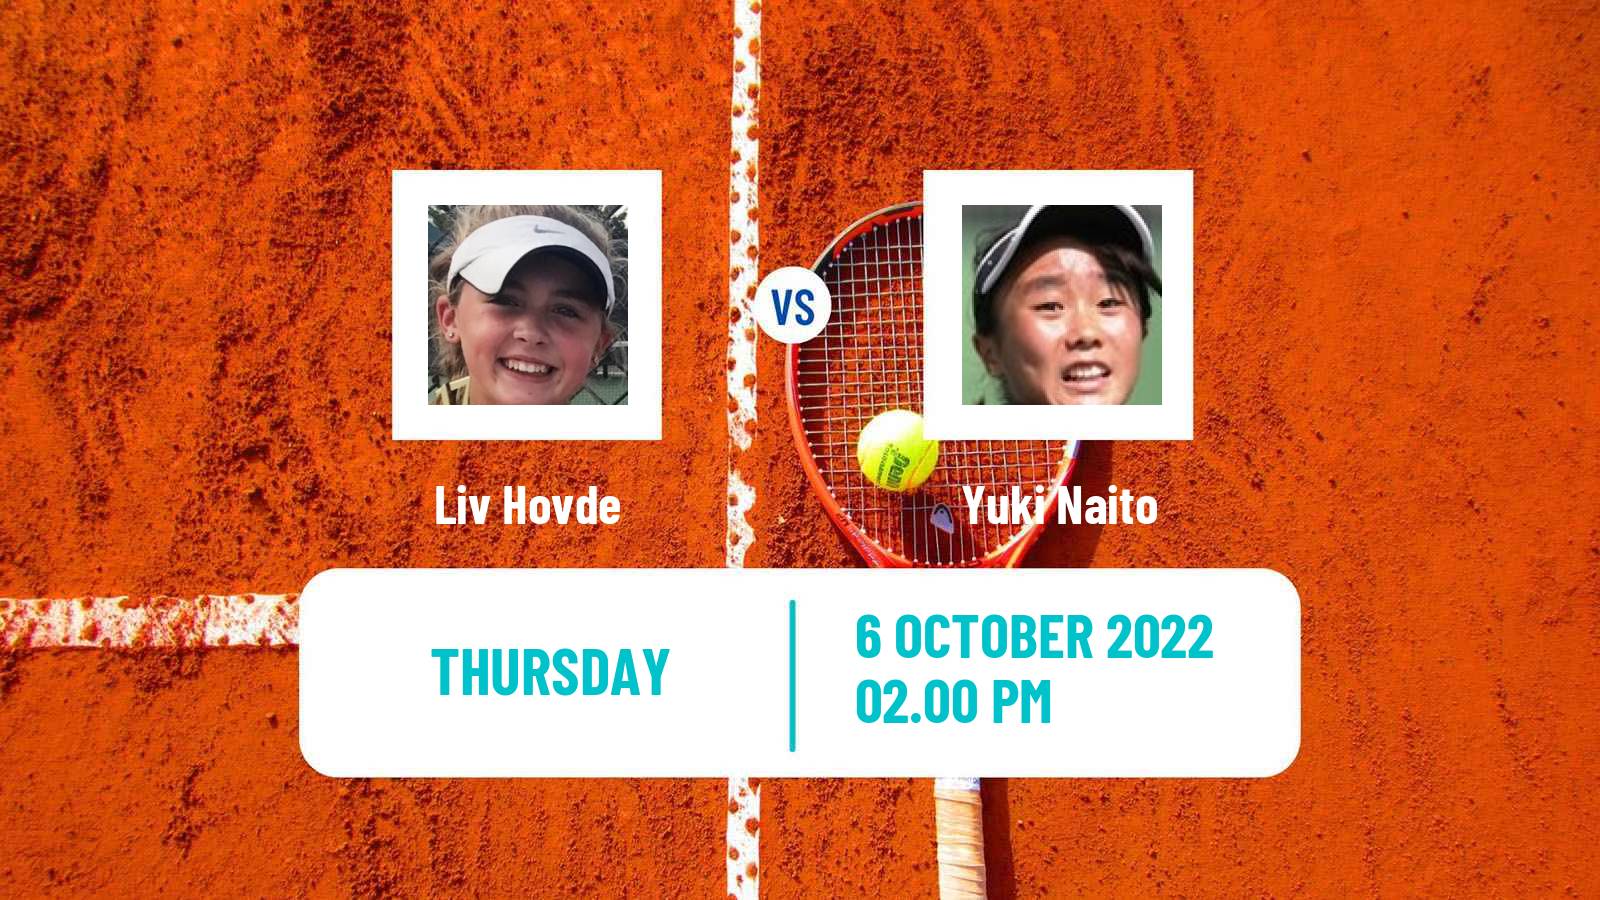 Tennis ITF Tournaments Liv Hovde - Yuki Naito